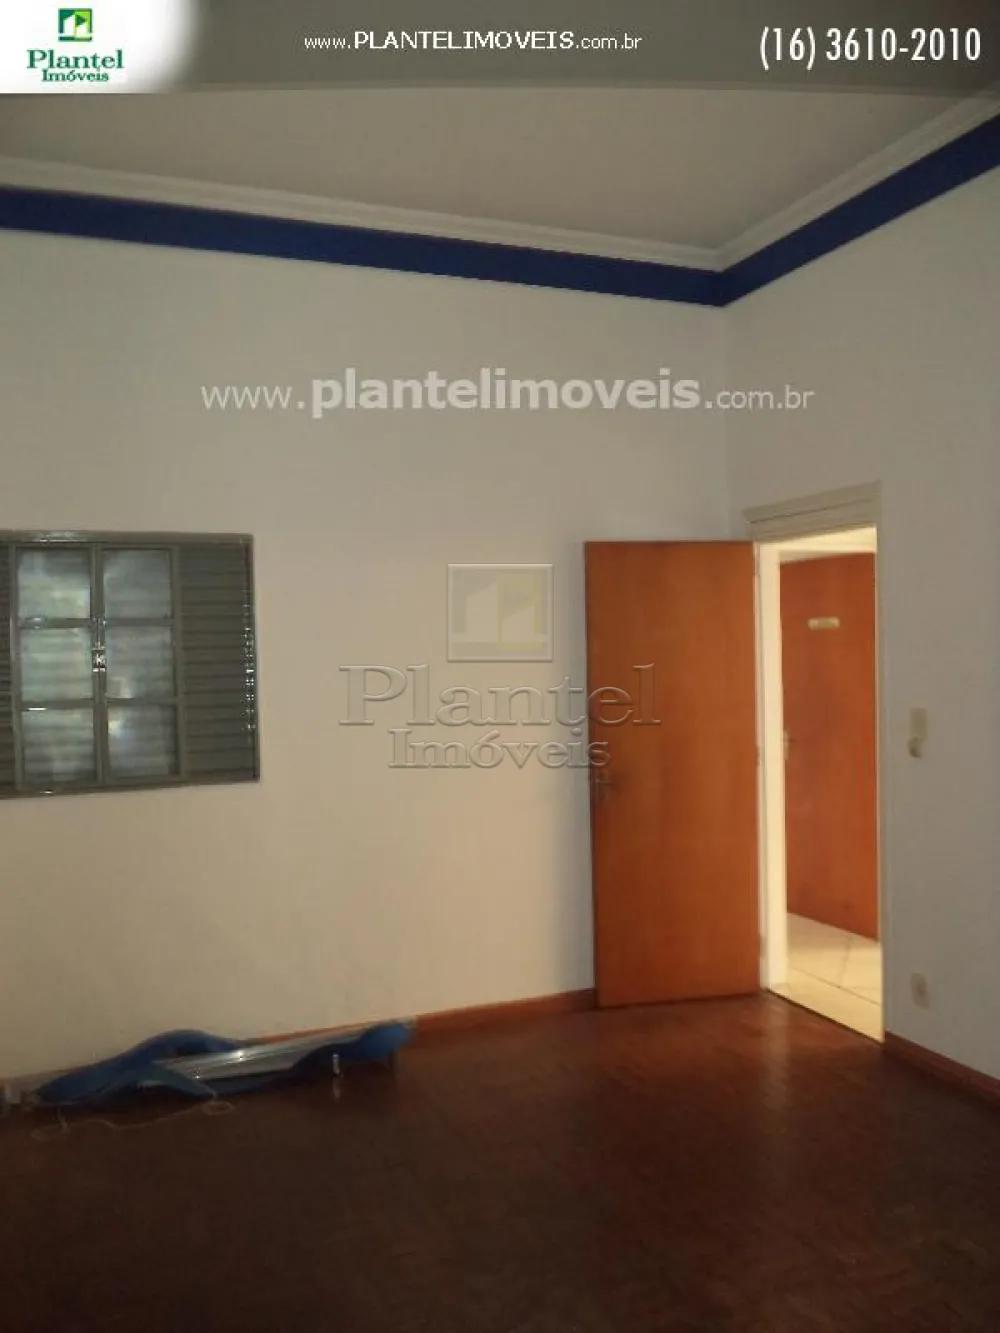 Imobiliária Ribeirão Preto - Plantel Imóveis - Comercial - Centro - Ribeirão Preto